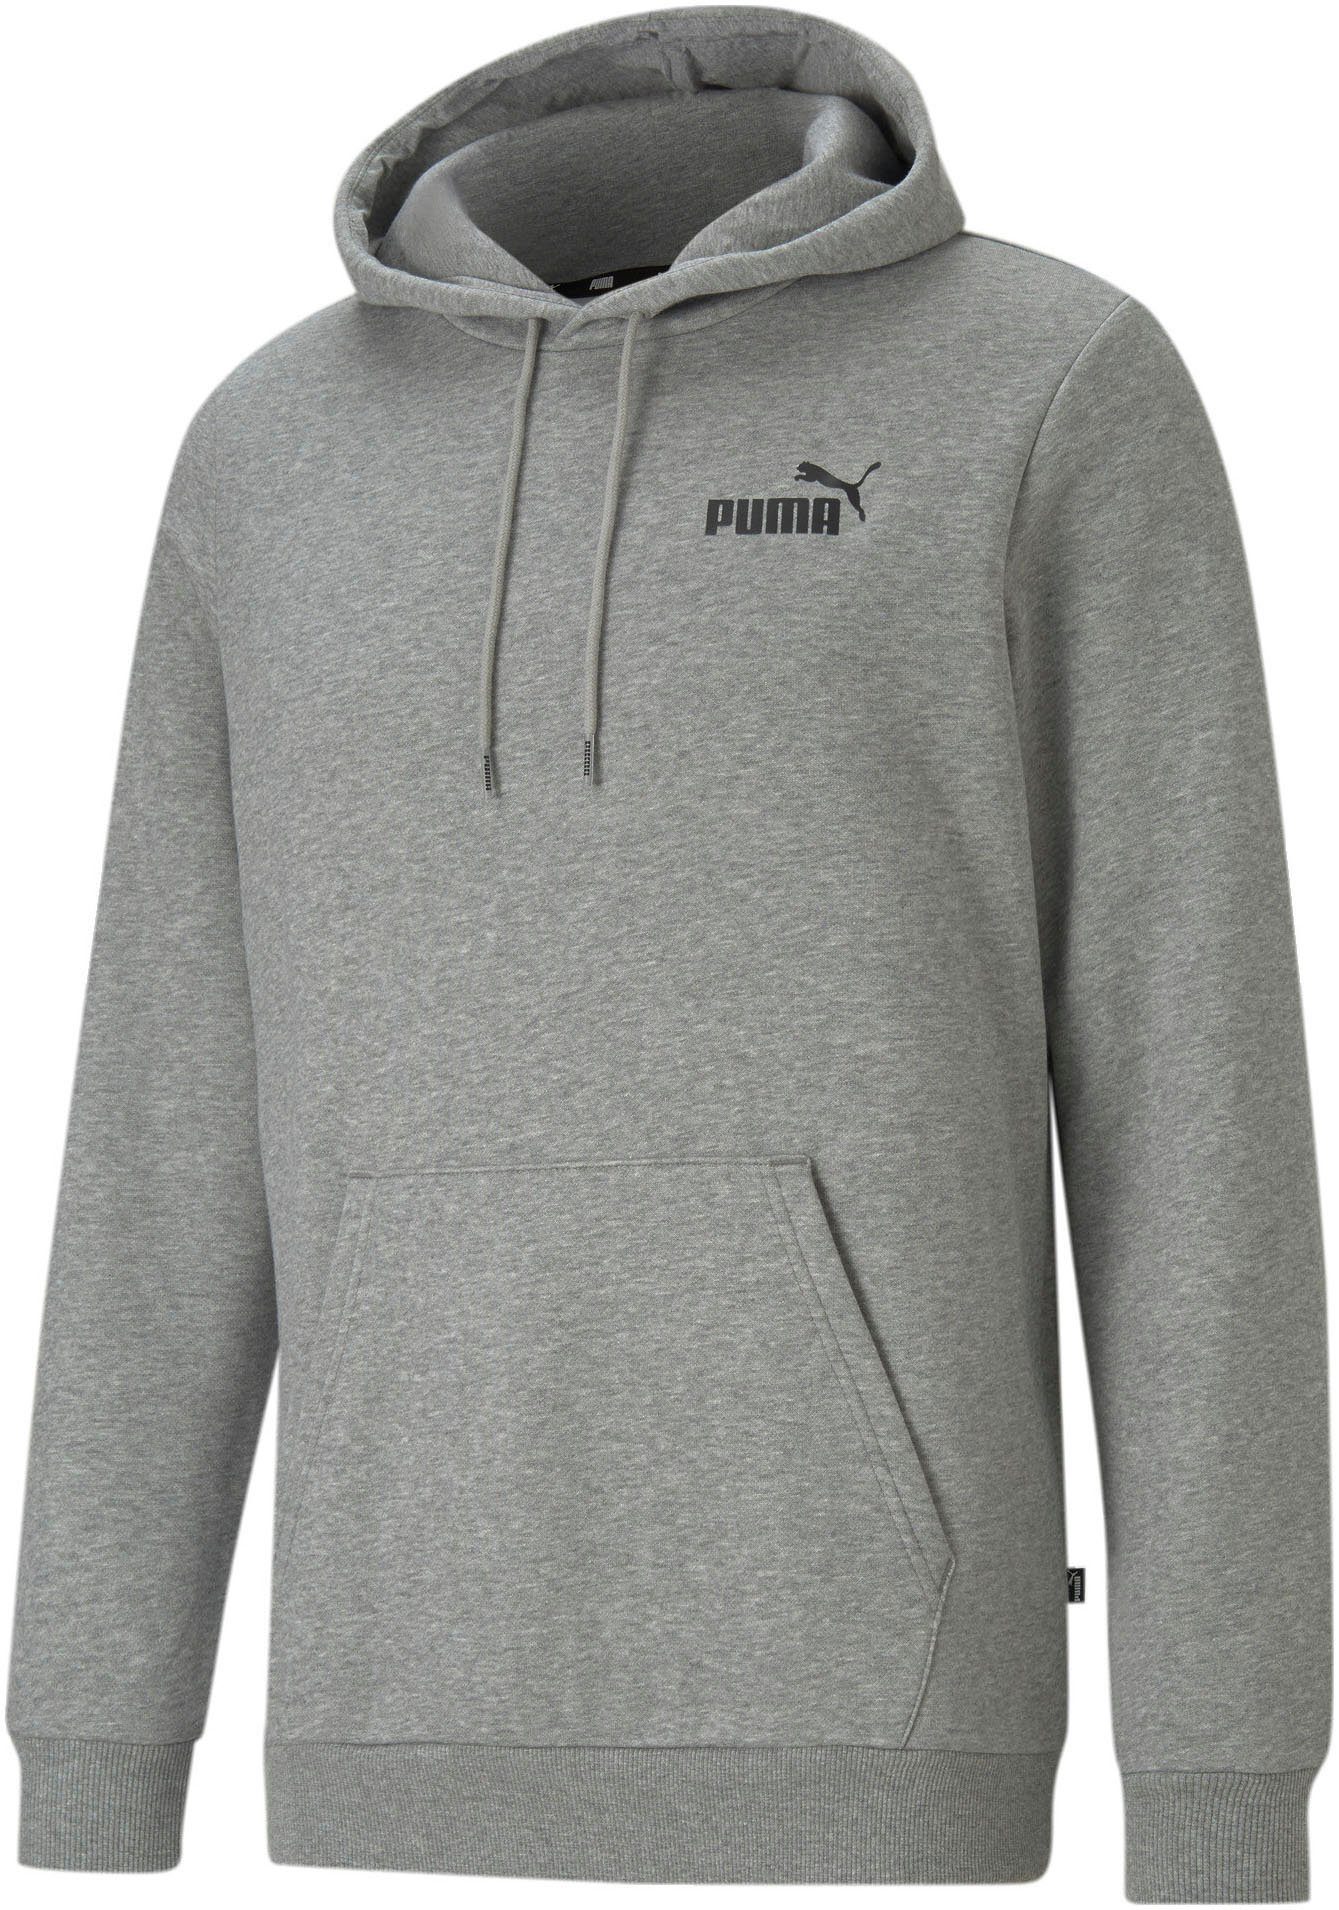 PUMA Sweater für Herren online kaufen | OTTO